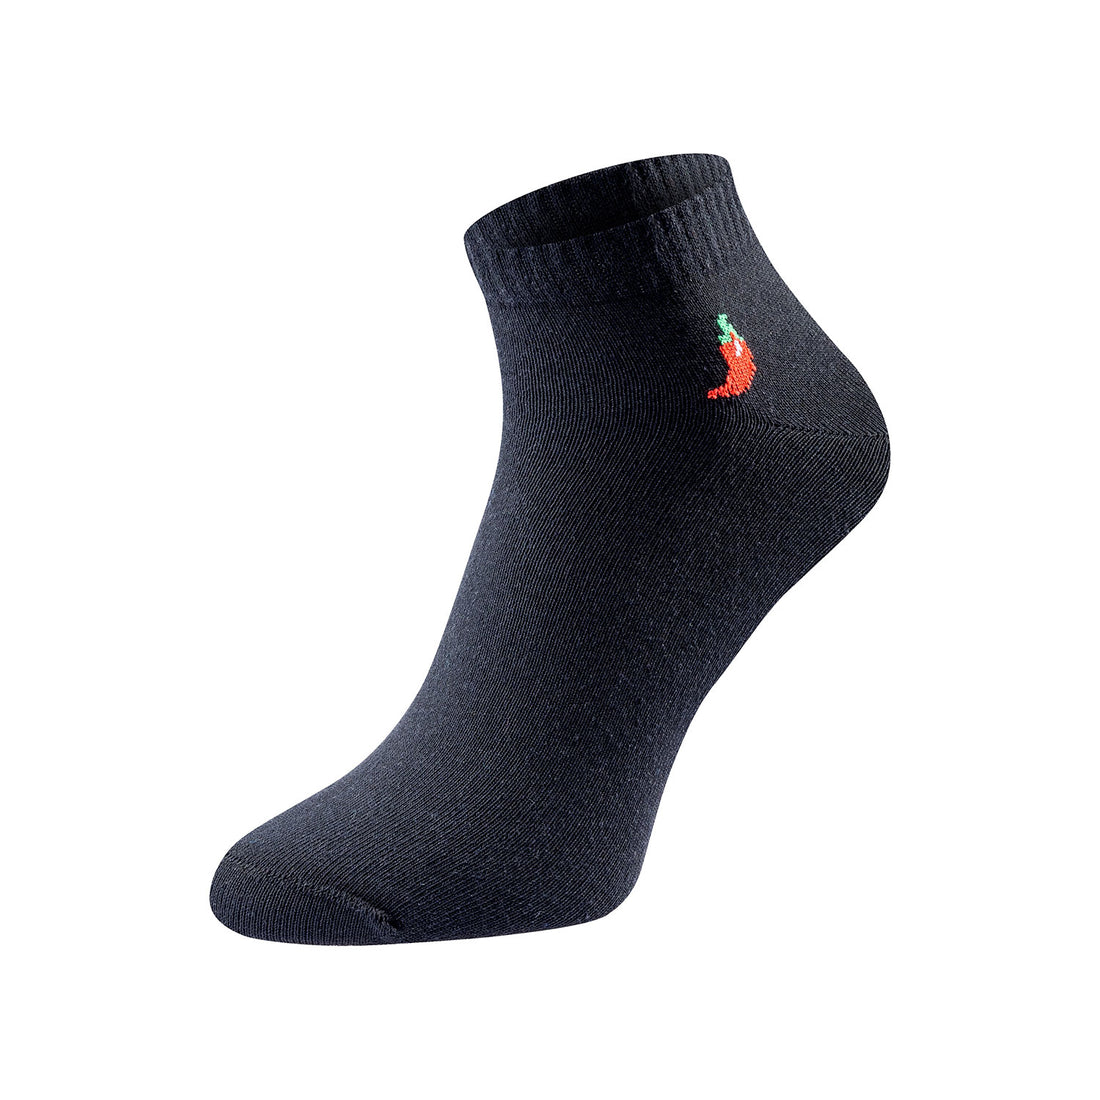 ChiliLifestyle Quarter Dark Socken, 3 Paar, für Damen und Herren